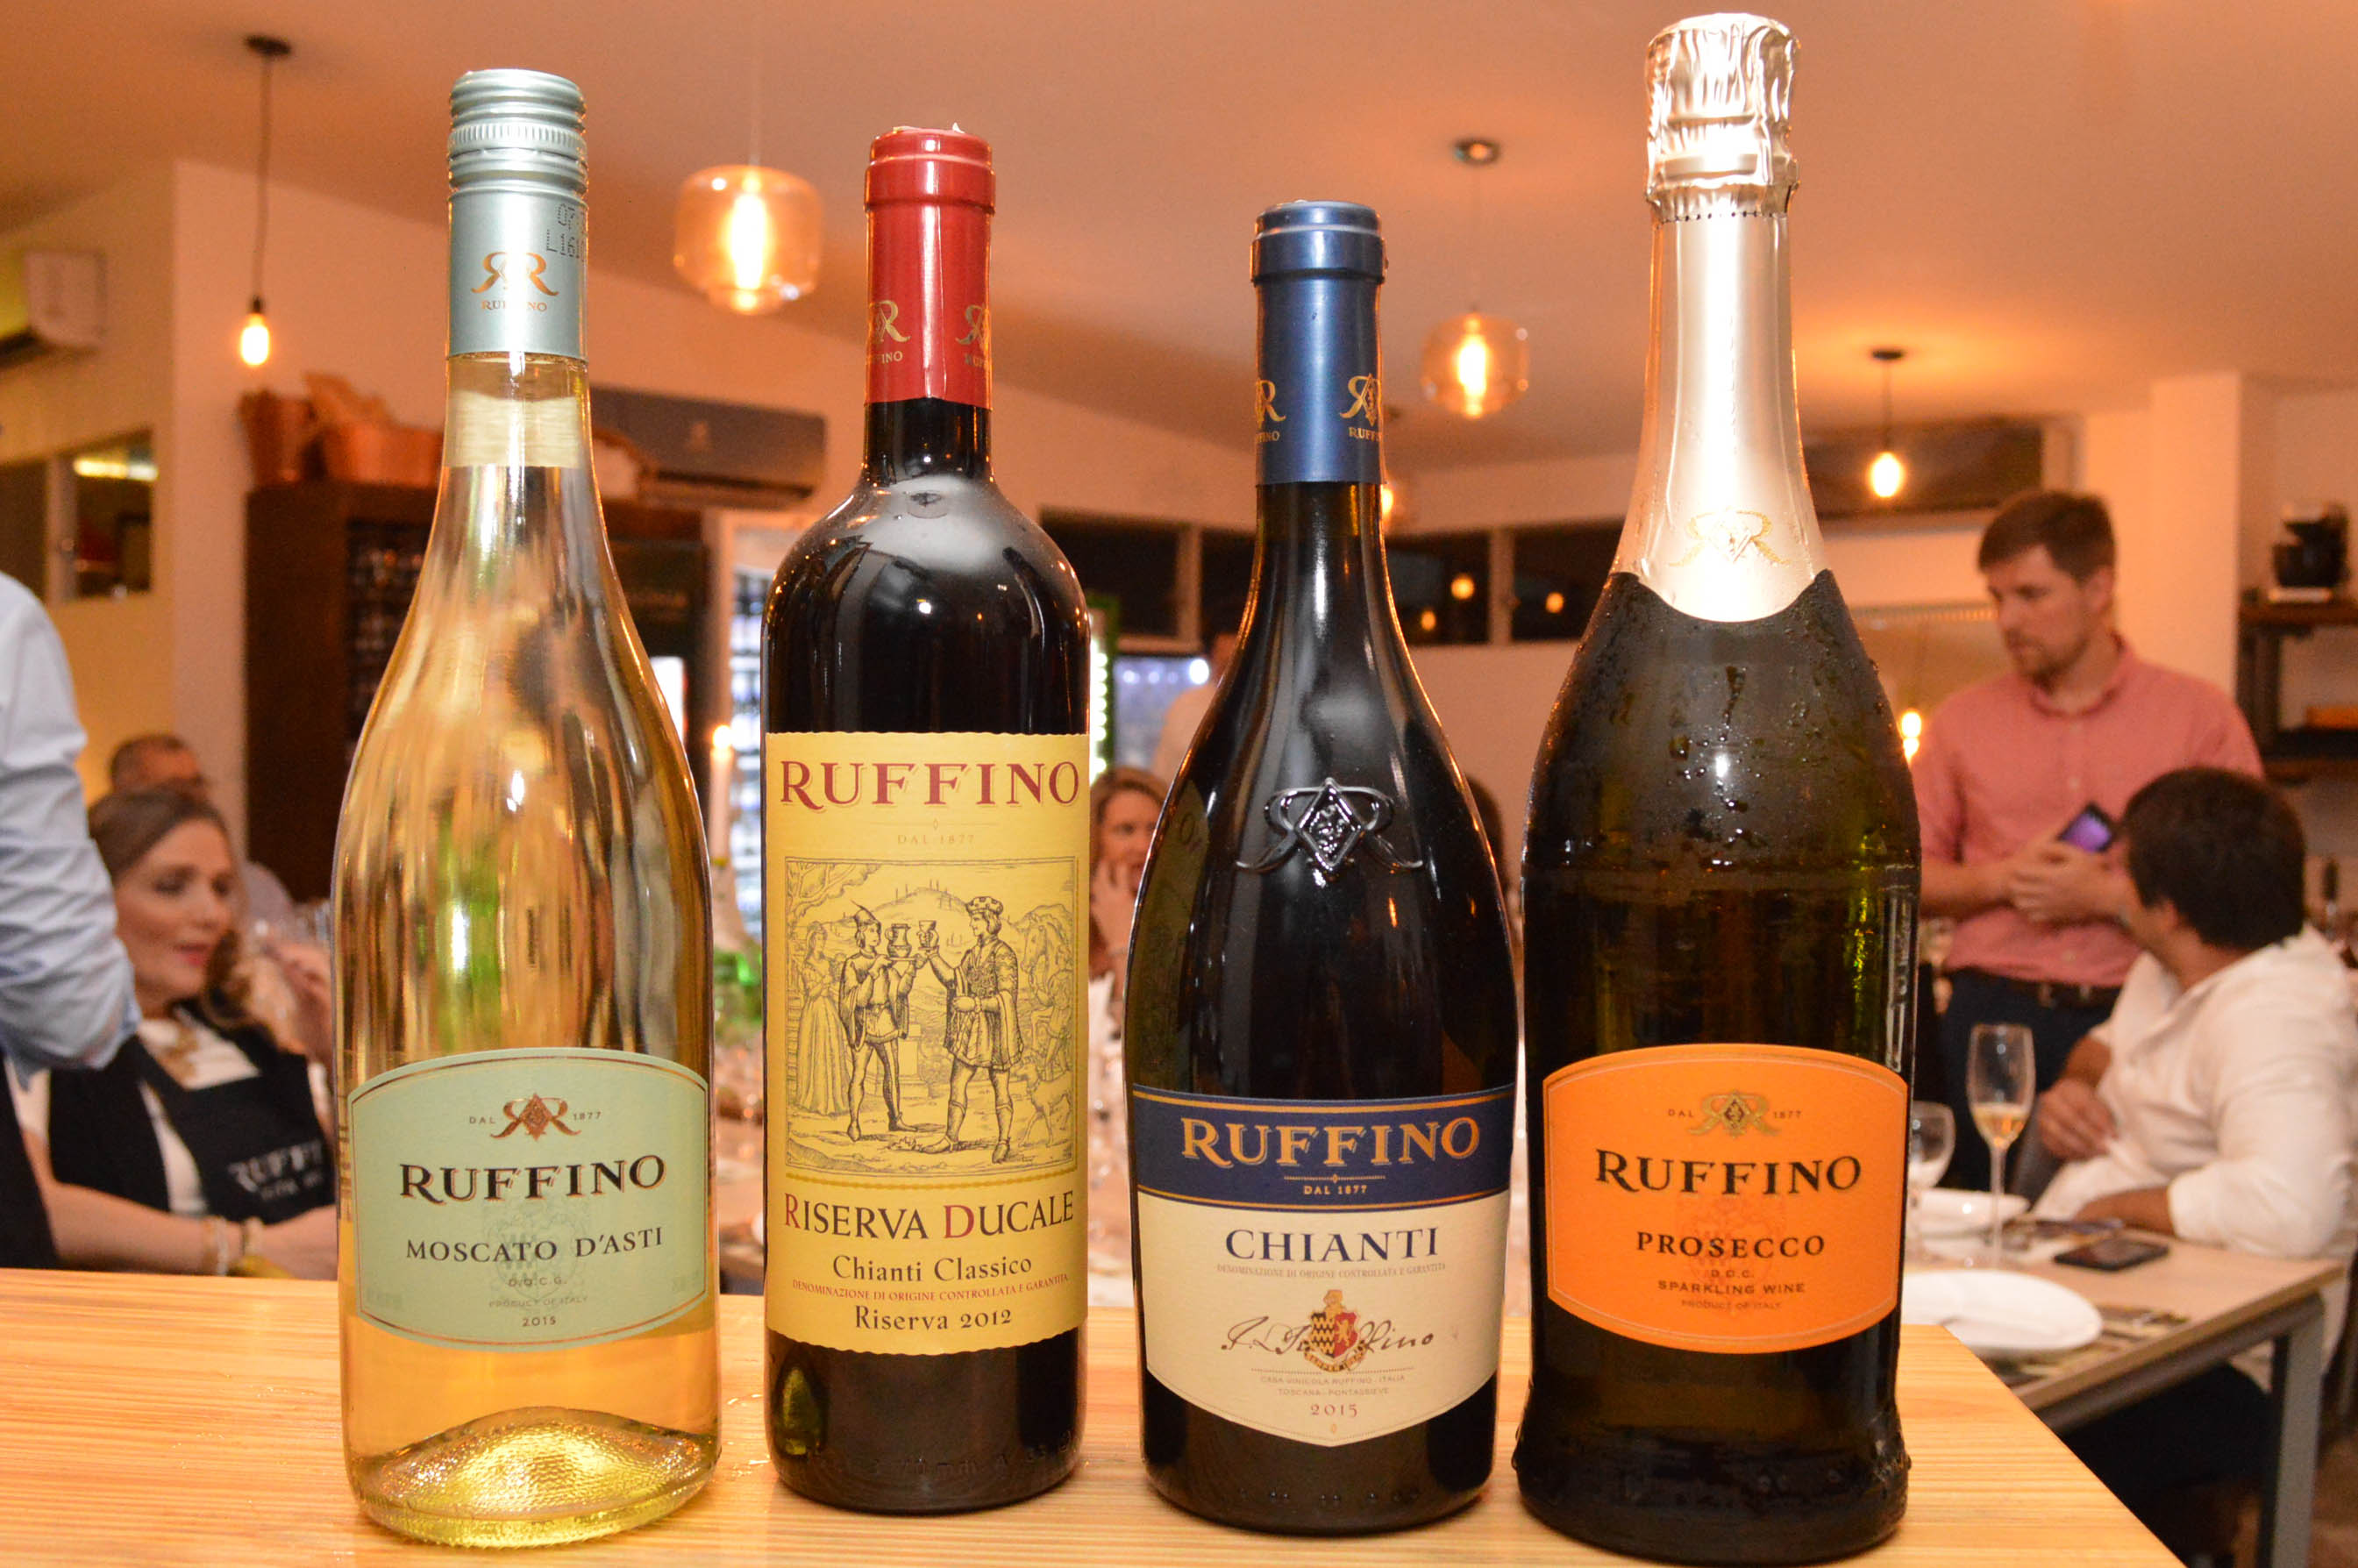 Las etiquetas de Ruffino degustadas en la ocasión. Una mejor que la otra, un vino italiano que "entró" bien en el mercado.